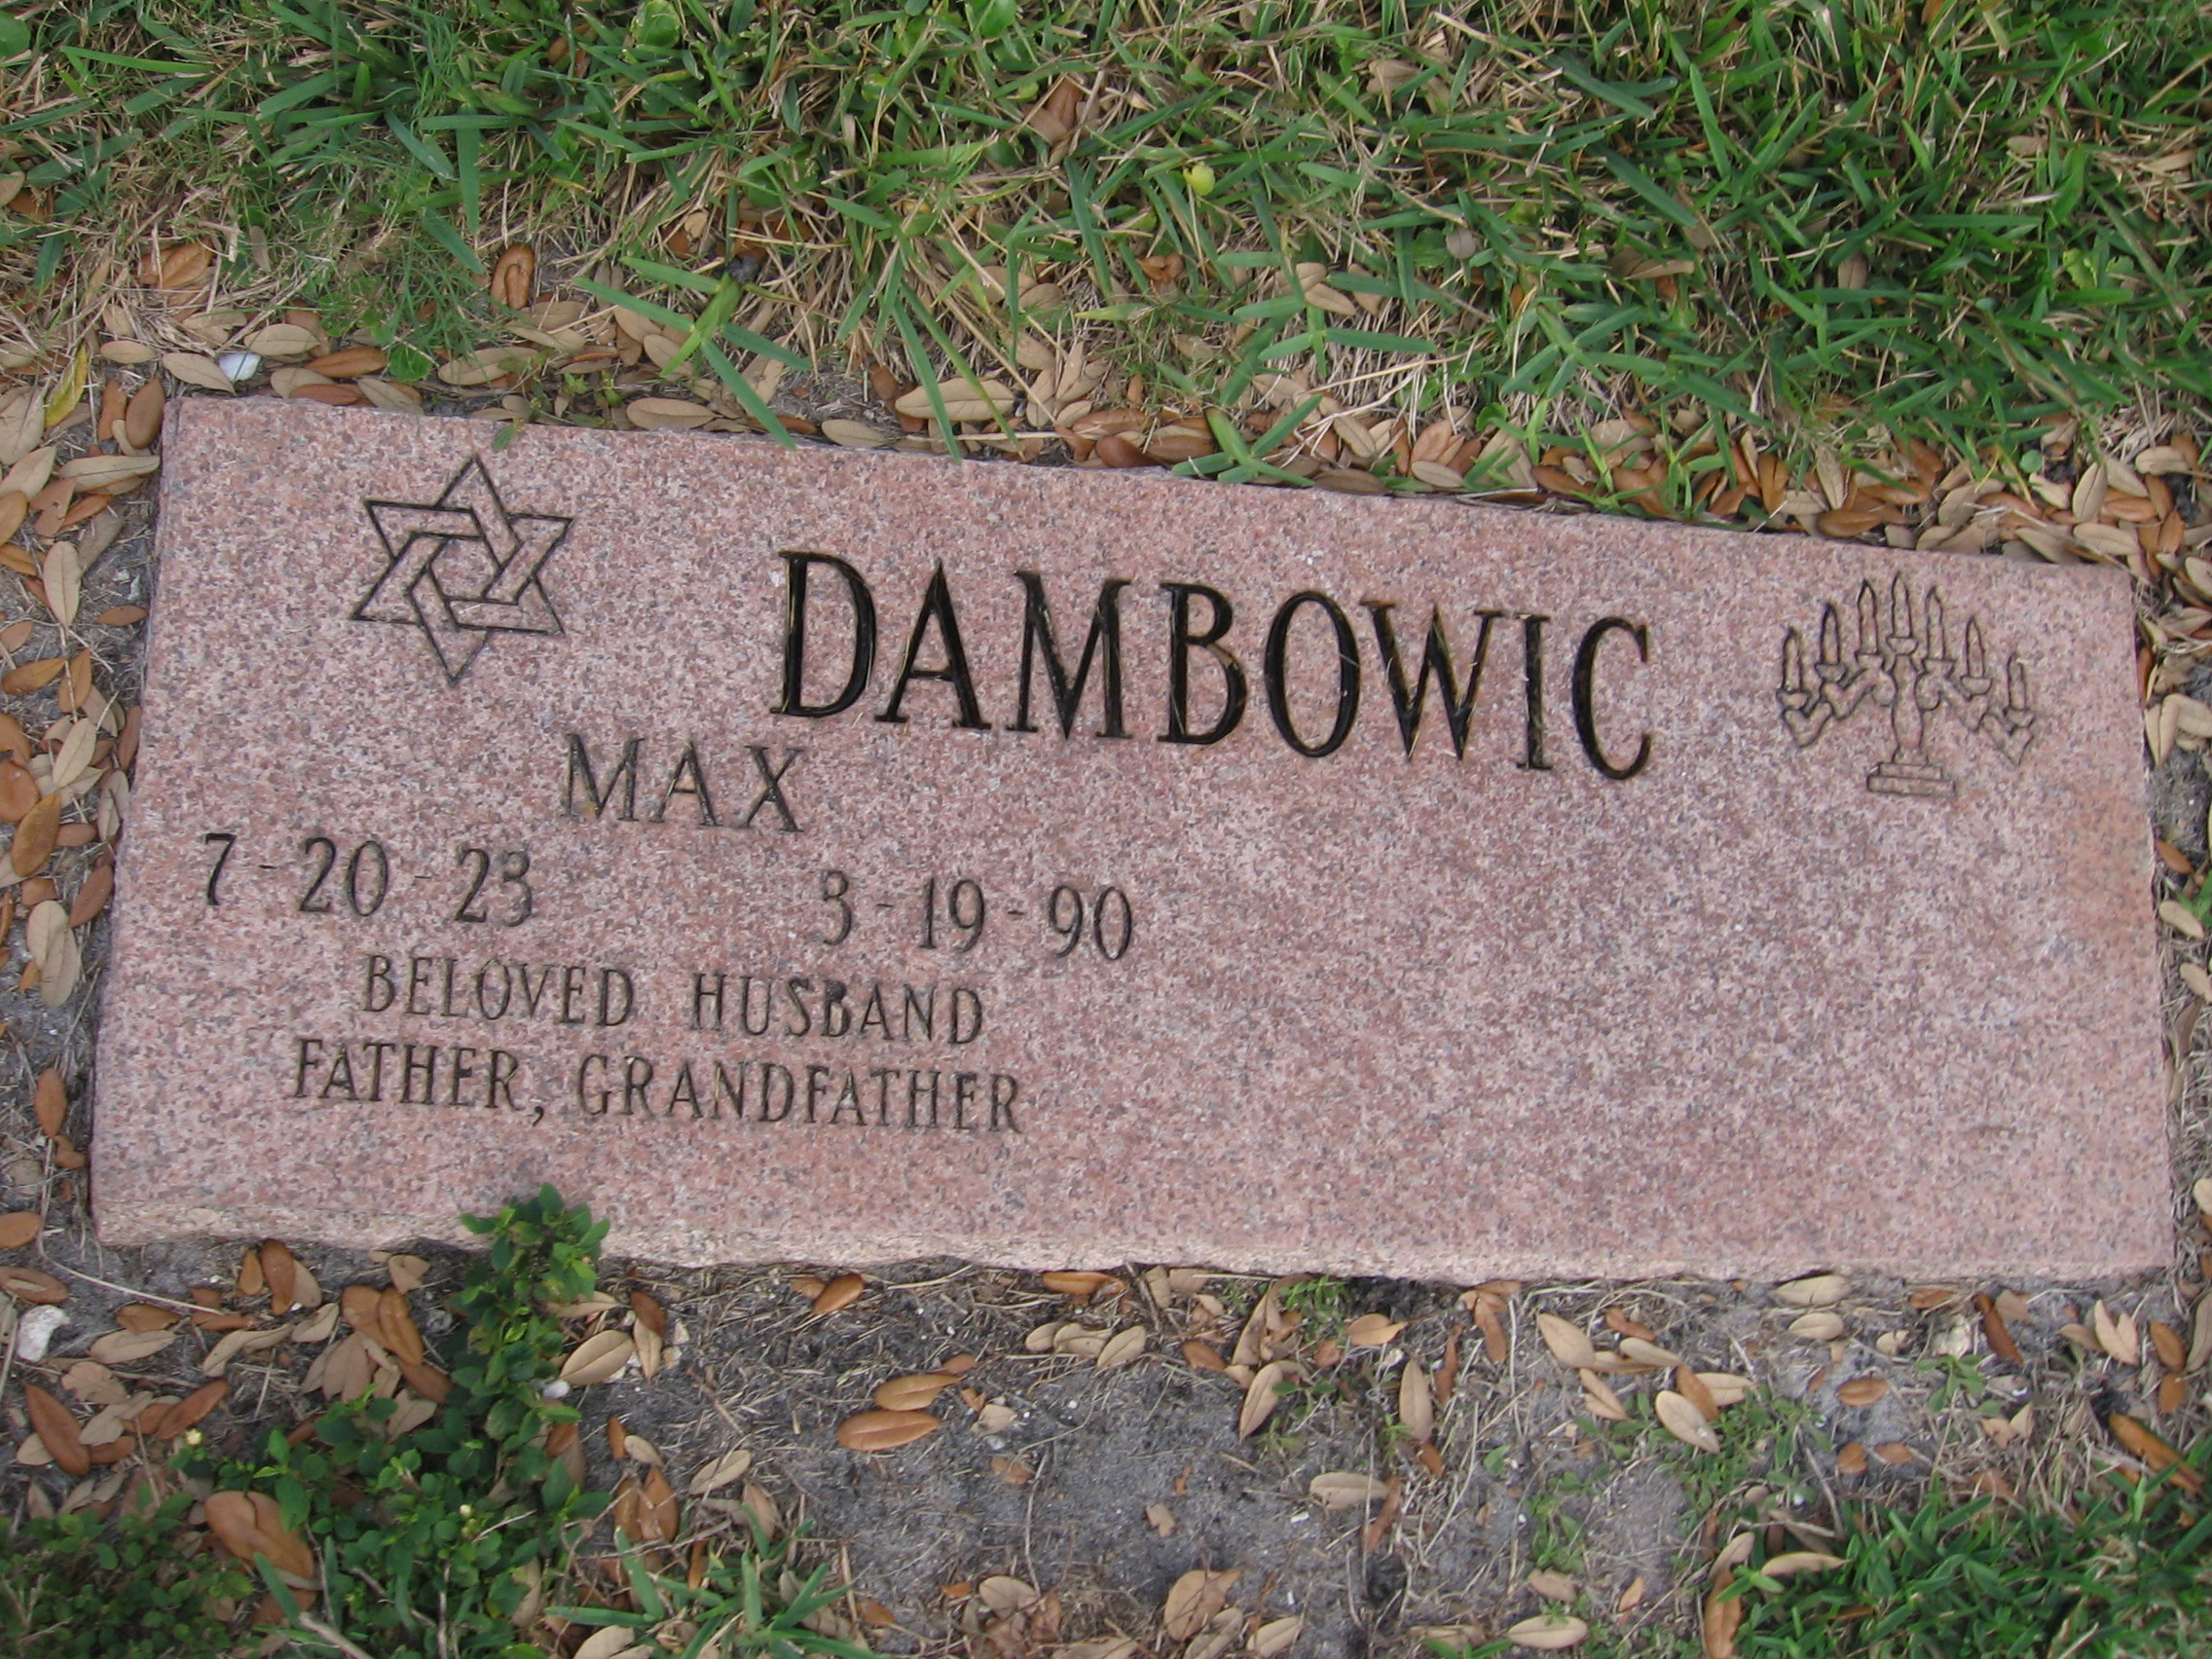 Max Dambowic